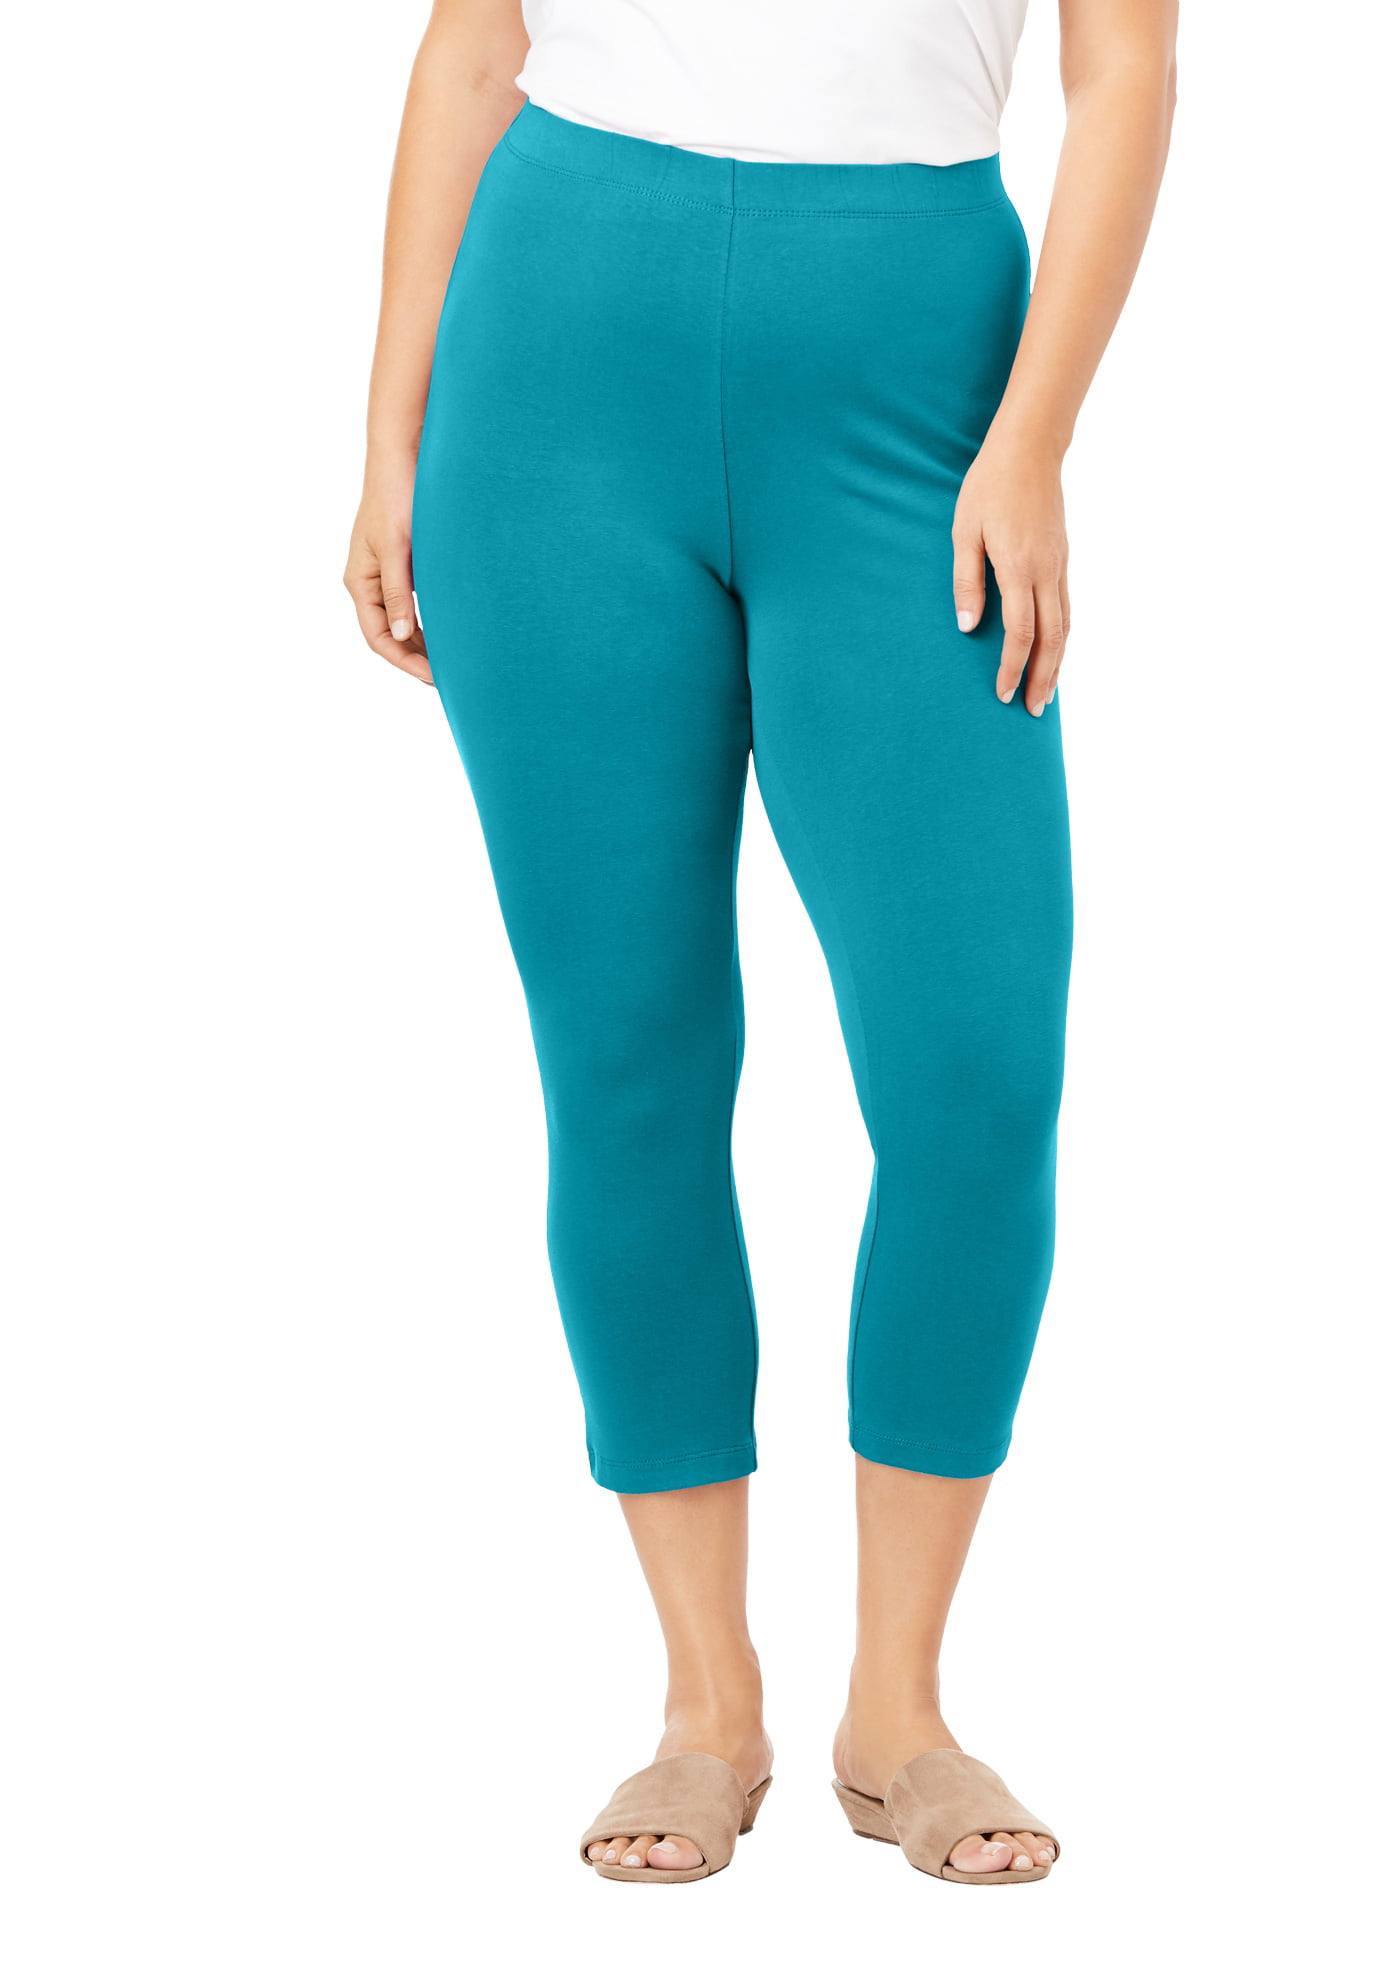 Roaman's Women's Plus Size Essential Stretch Capri Legging Activewear  Workout Yoga Pants - 34/36, Deep Turquoise Purple - Walmart.com